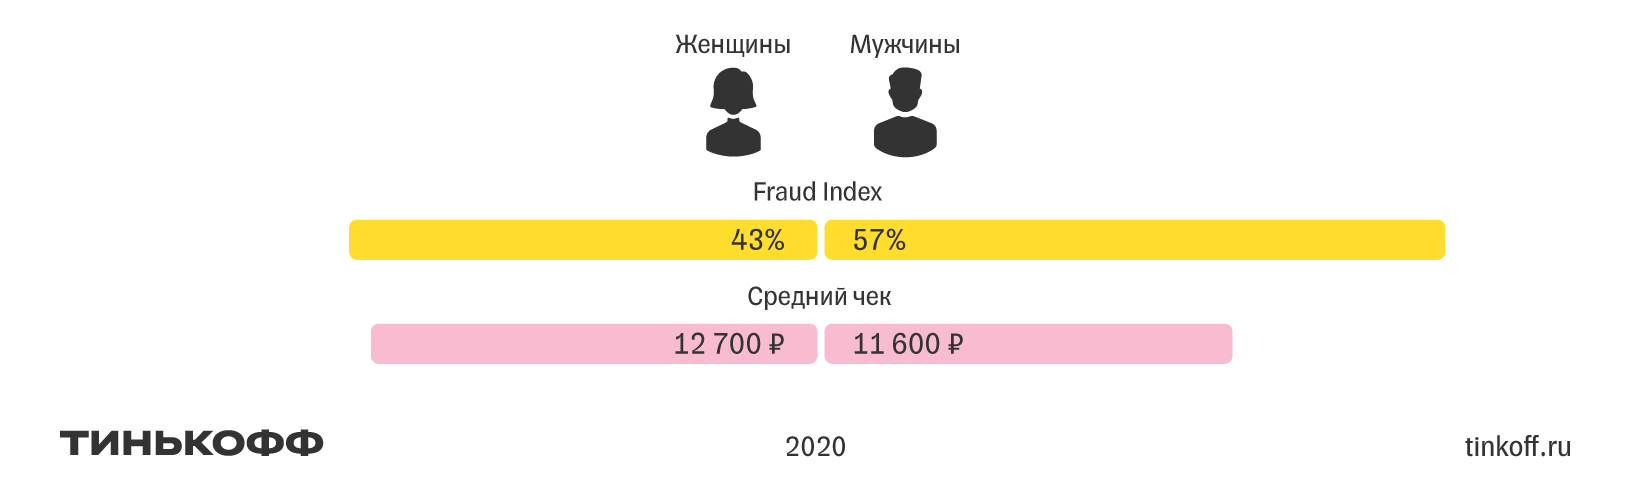 Тинькофф: как происходит мошенничество в российской банковской сфере - рис.2